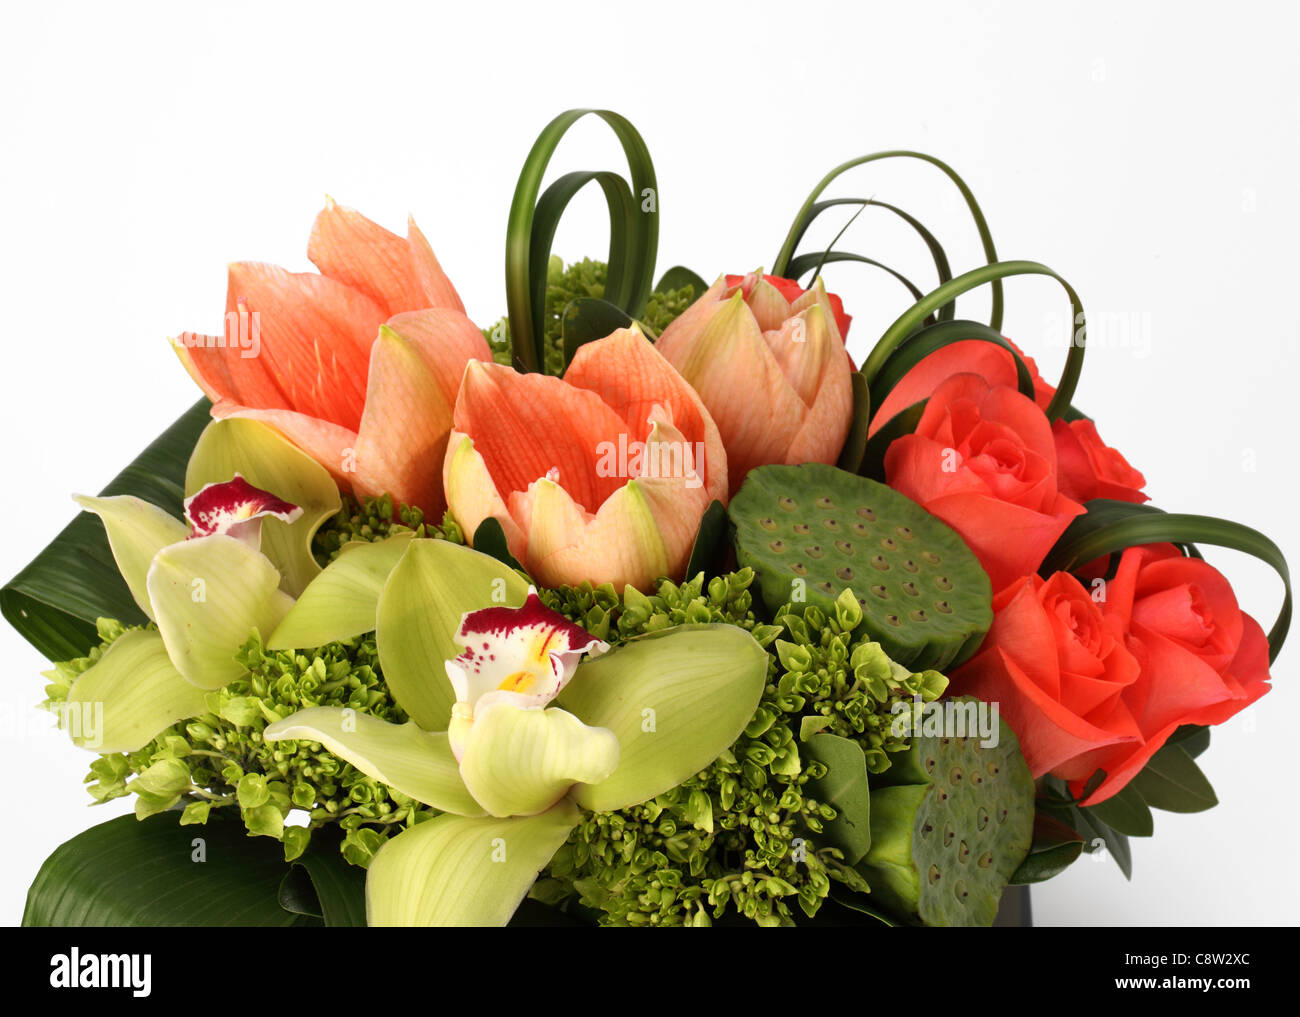 Un gros plan d'un bouquet de fleurs colorées. Roses orange, vert graines lily pads, des tulipes roses, orchidées cymbidiums Banque D'Images